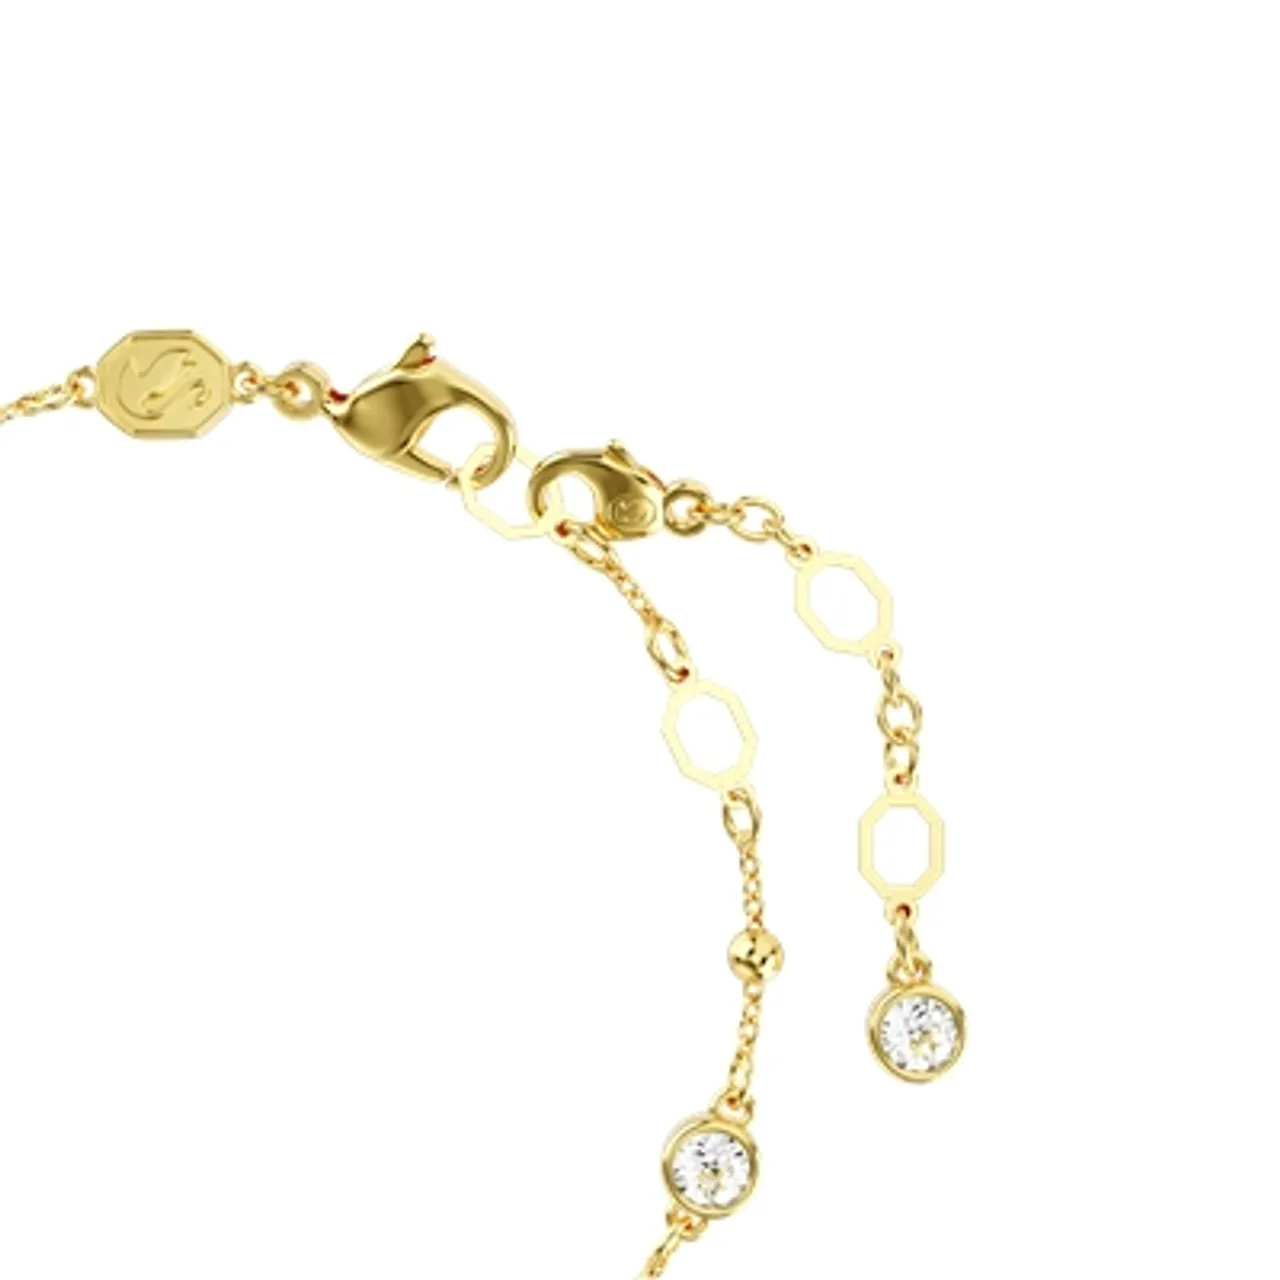 Swarovski Imber Gold Round Cut White Crystal Bracelet